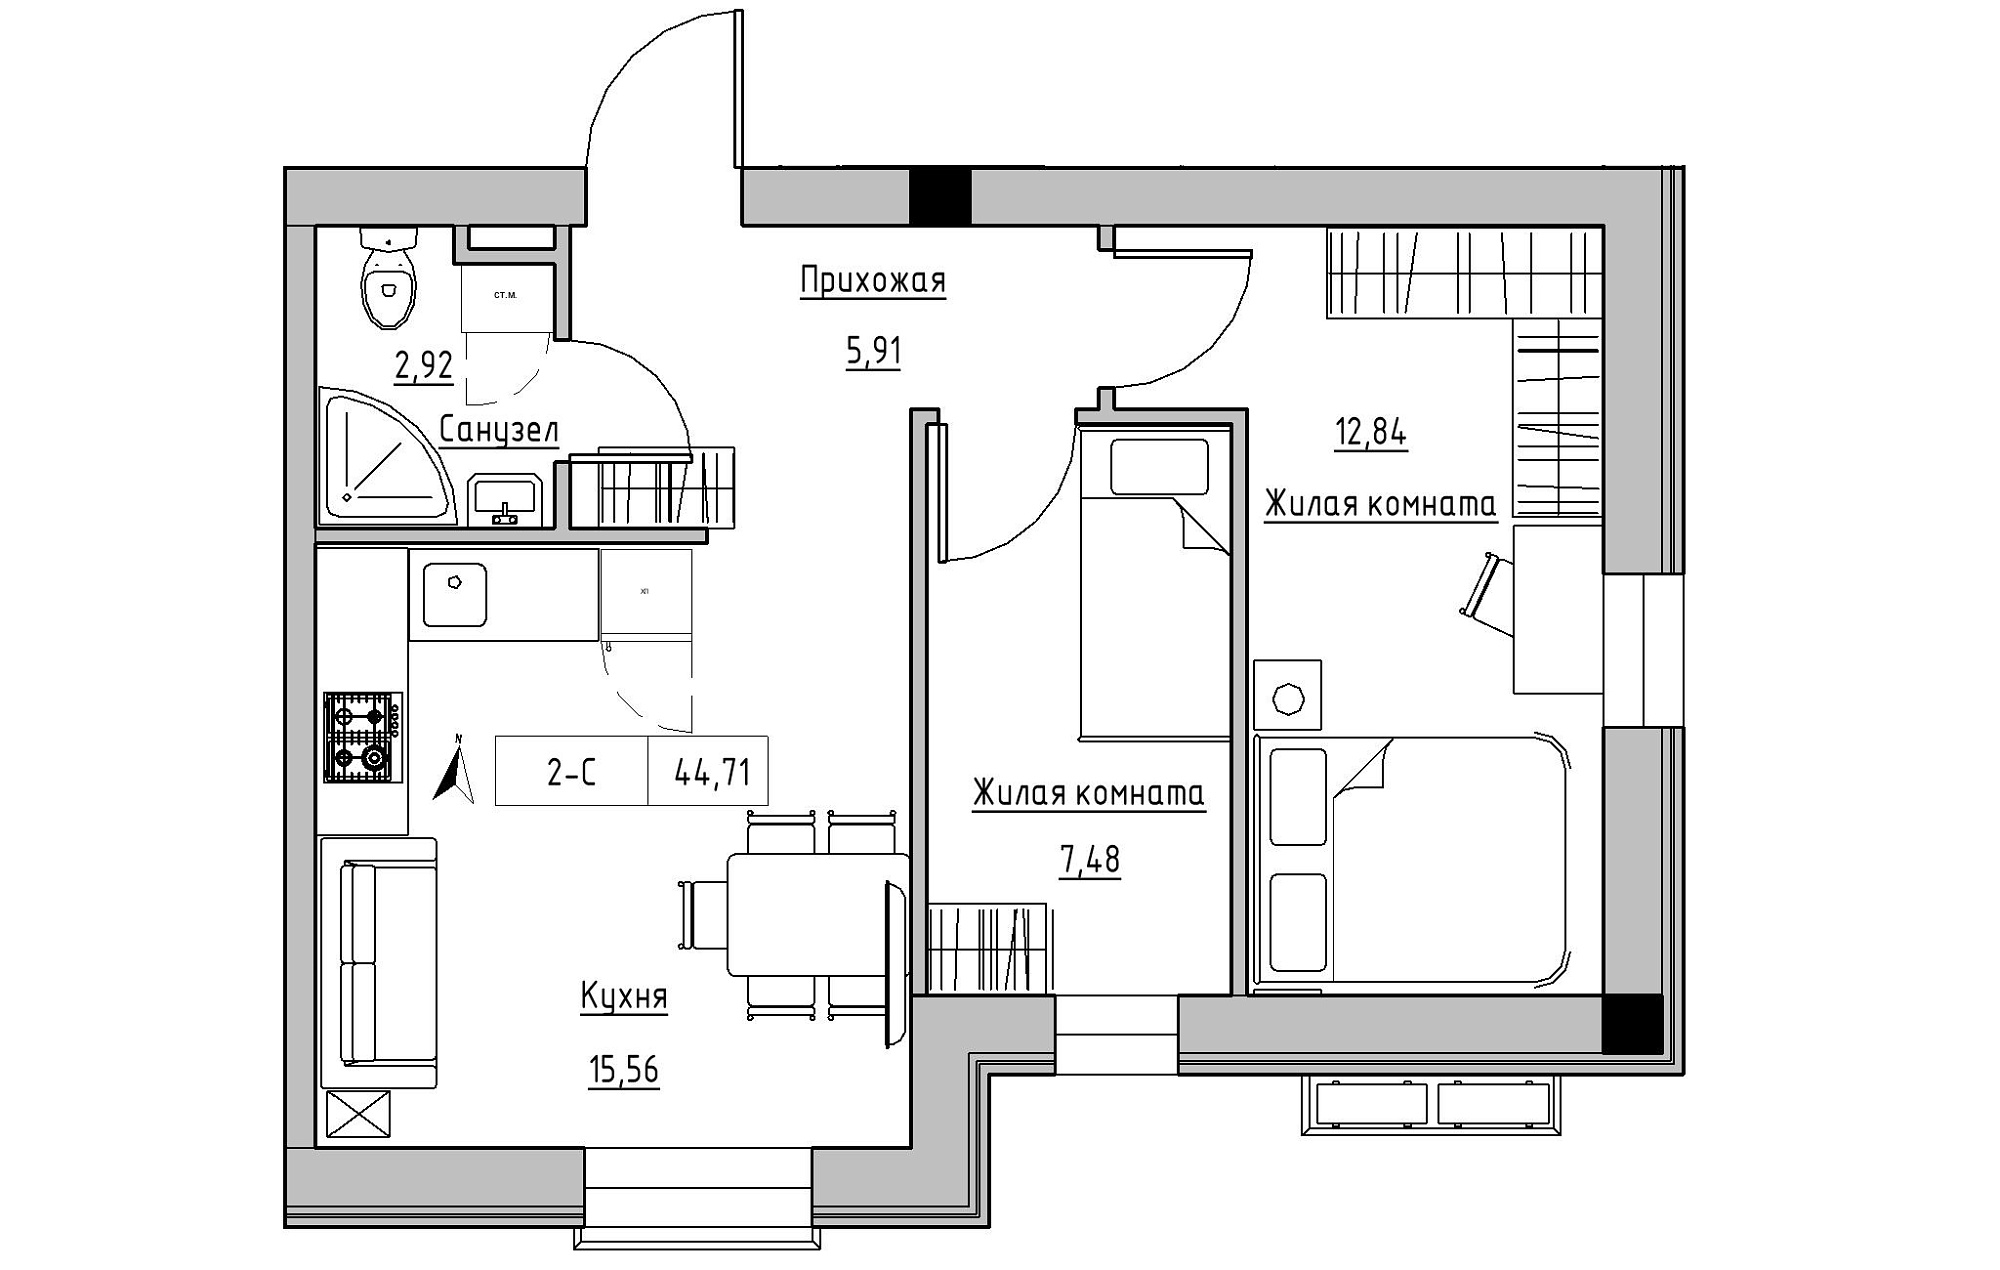 Планування 2-к квартира площею 44.71м2, KS-019-01/0008.